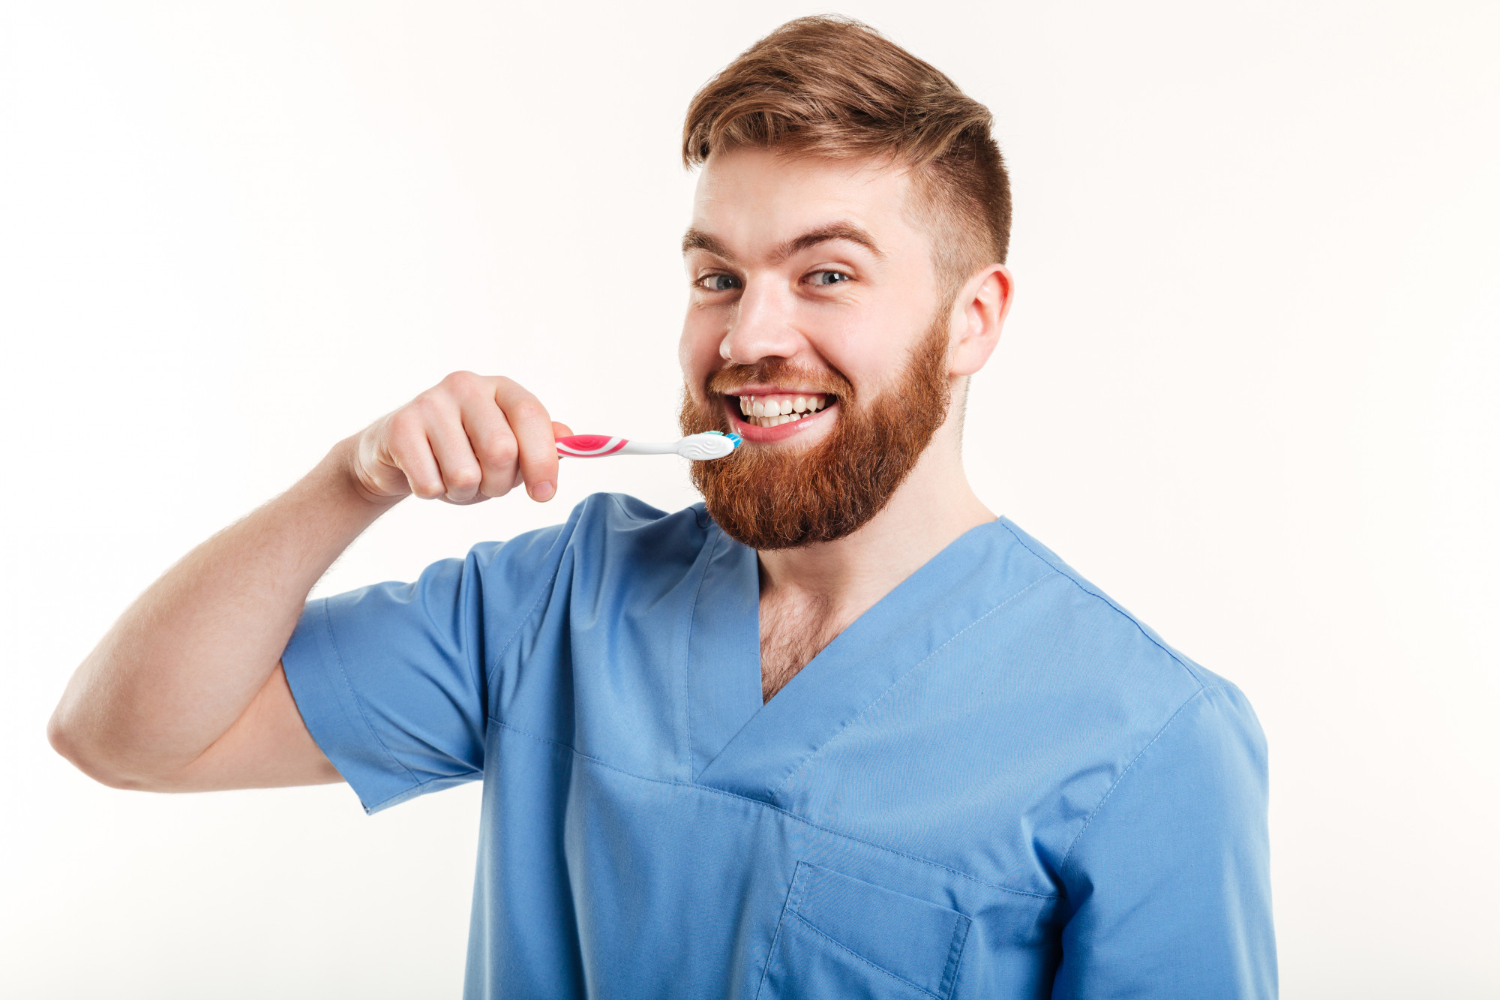 Prevenția dentară. De ce este importantă și cum te ajută aceasta să eviți tratamentele stomatologice complexe